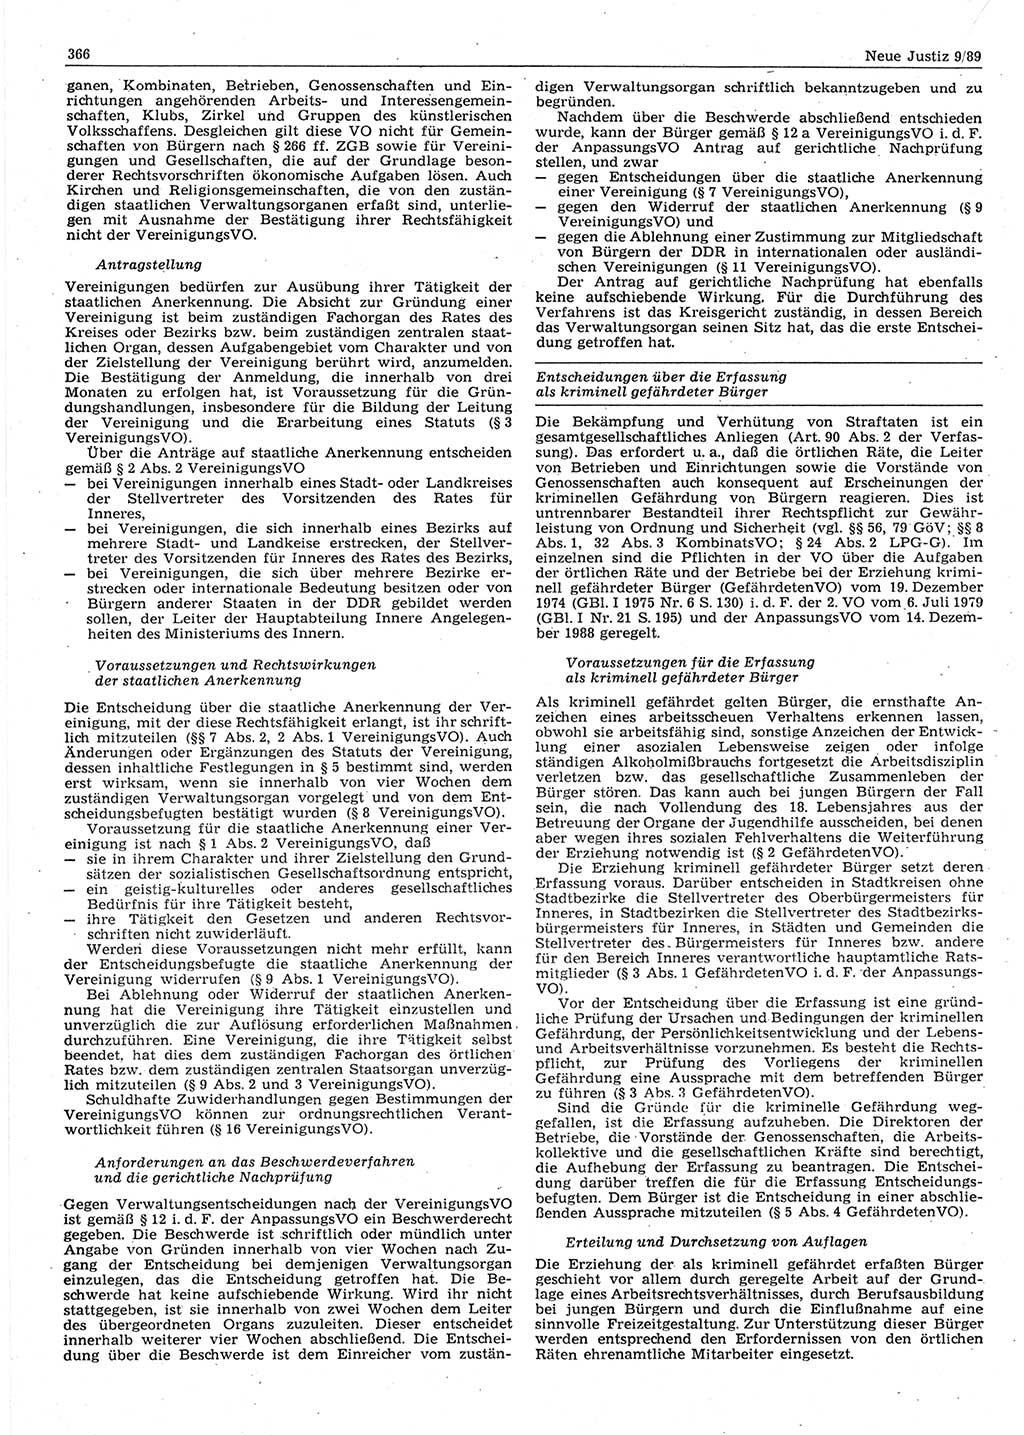 Neue Justiz (NJ), Zeitschrift für sozialistisches Recht und Gesetzlichkeit [Deutsche Demokratische Republik (DDR)], 43. Jahrgang 1989, Seite 366 (NJ DDR 1989, S. 366)